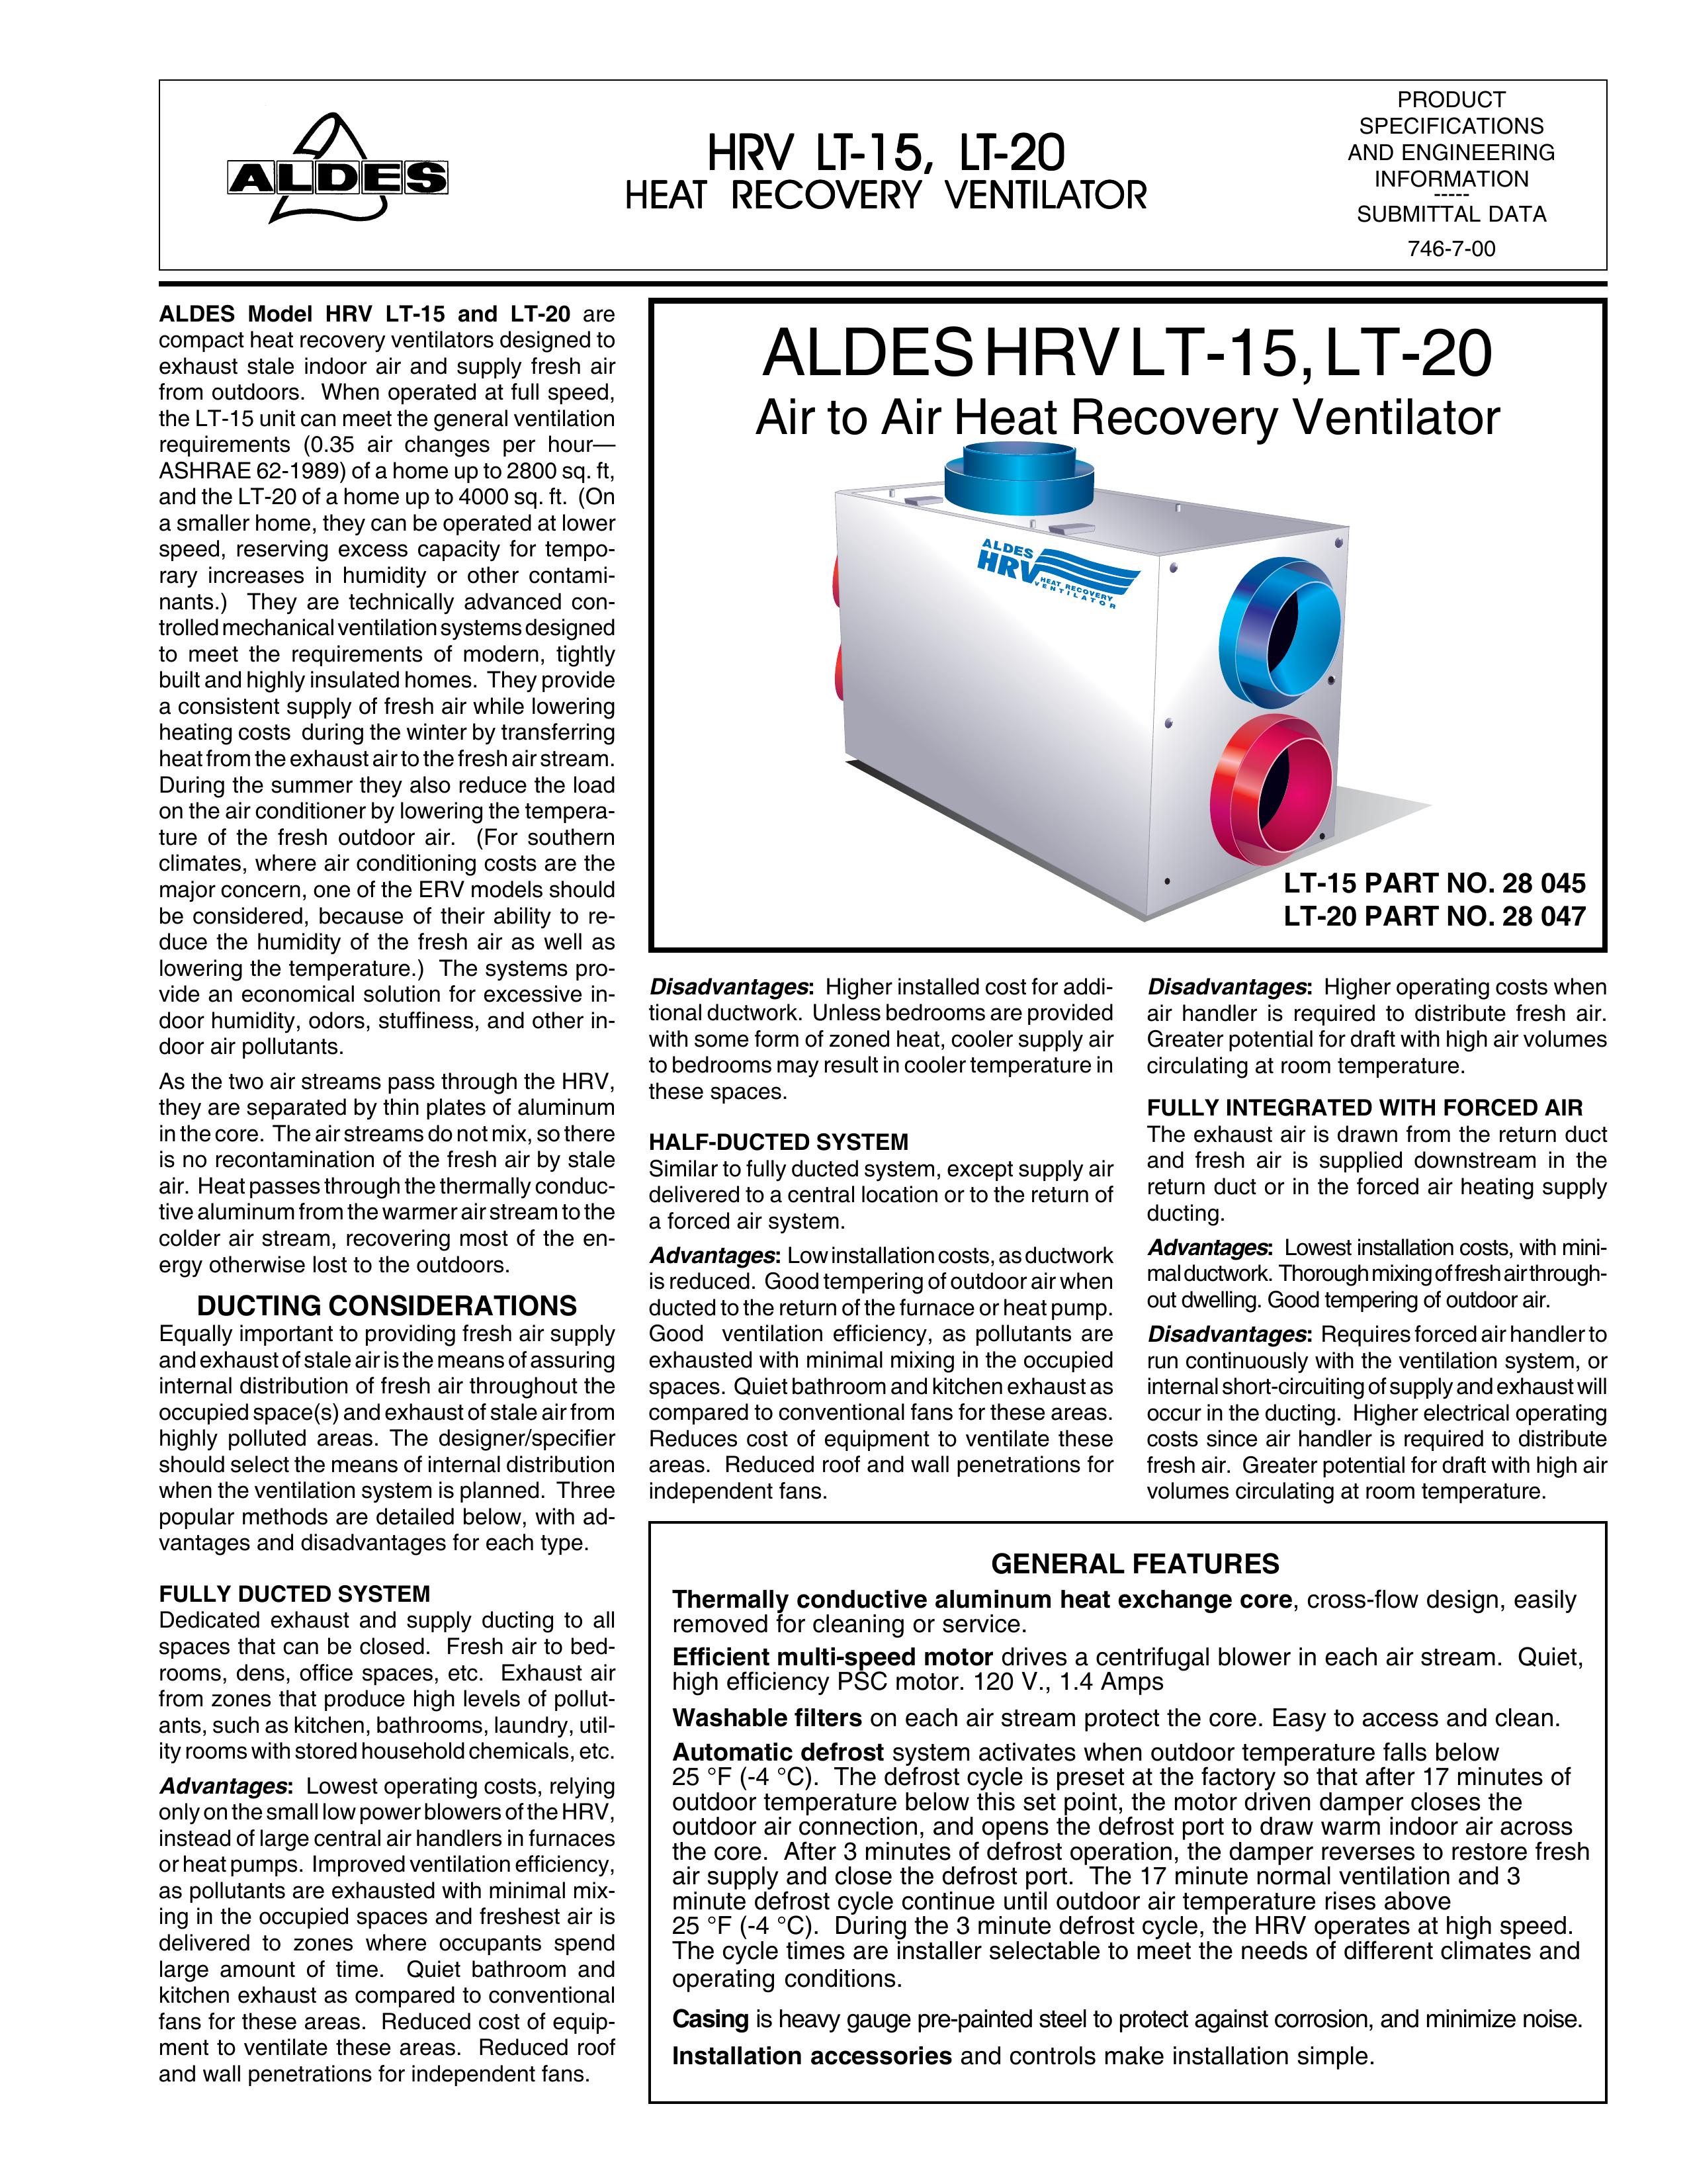 American Aldes LT-15 Ventilation Hood User Manual